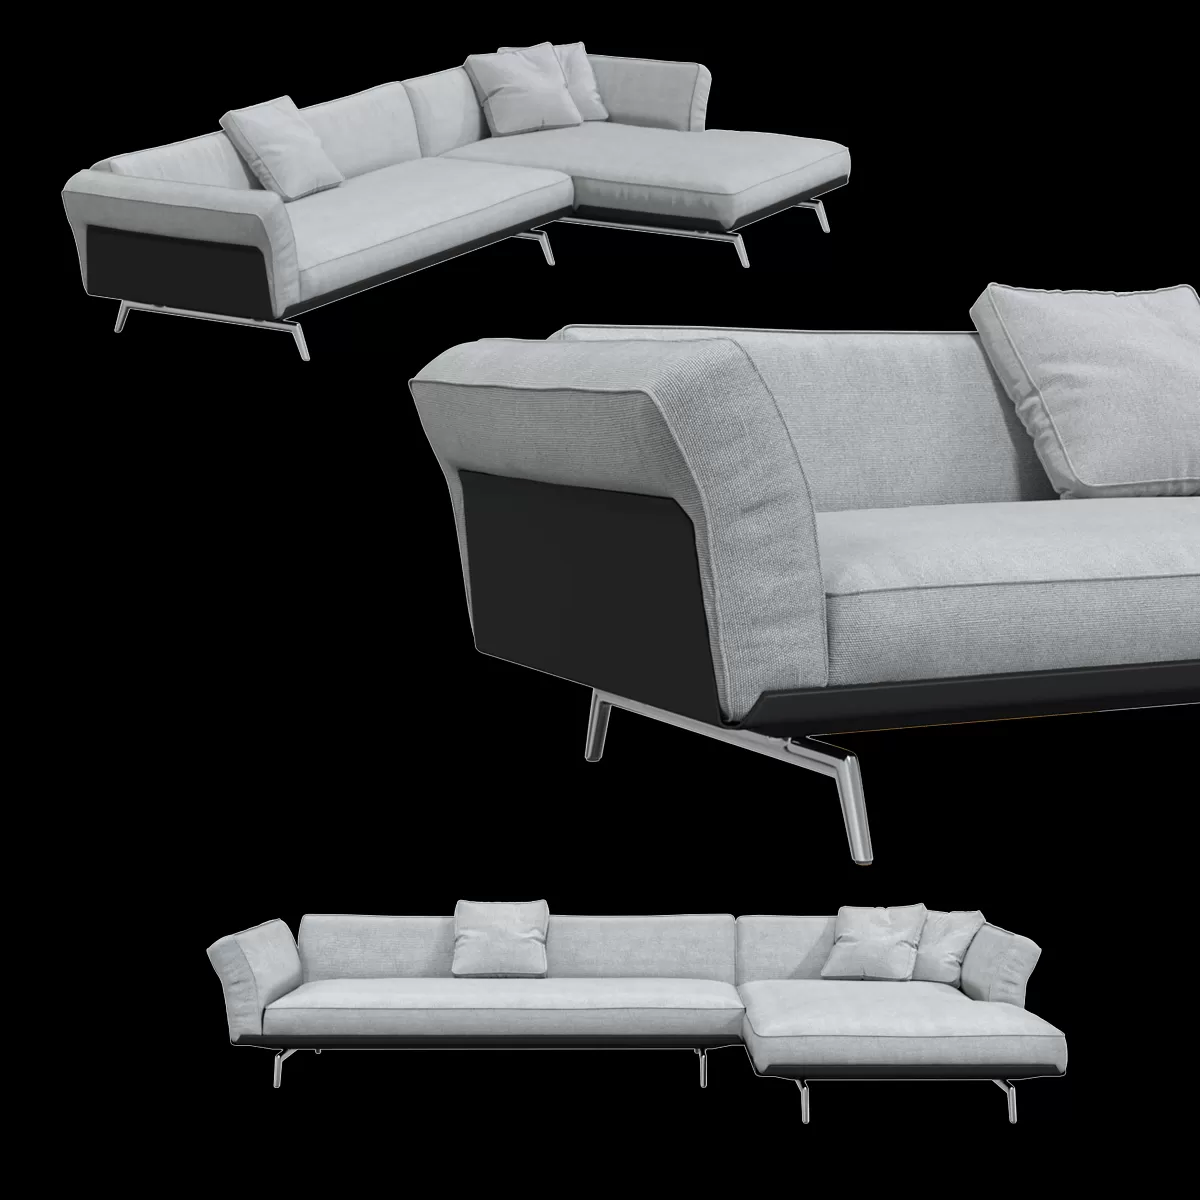 SOFA – Flexform Este sofa